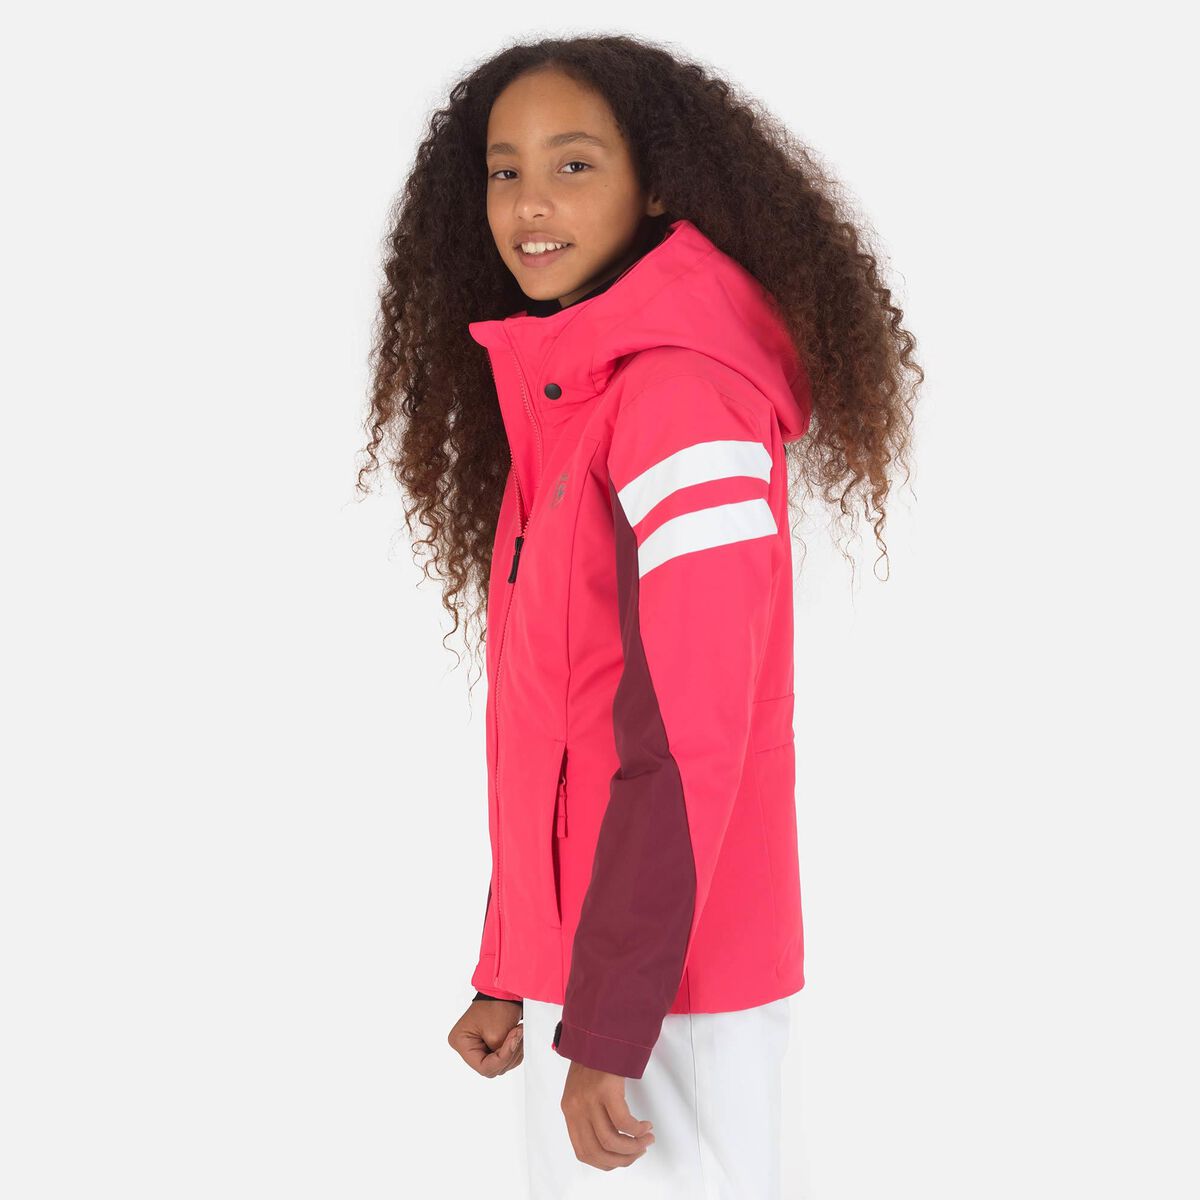 Girls' ski jacket